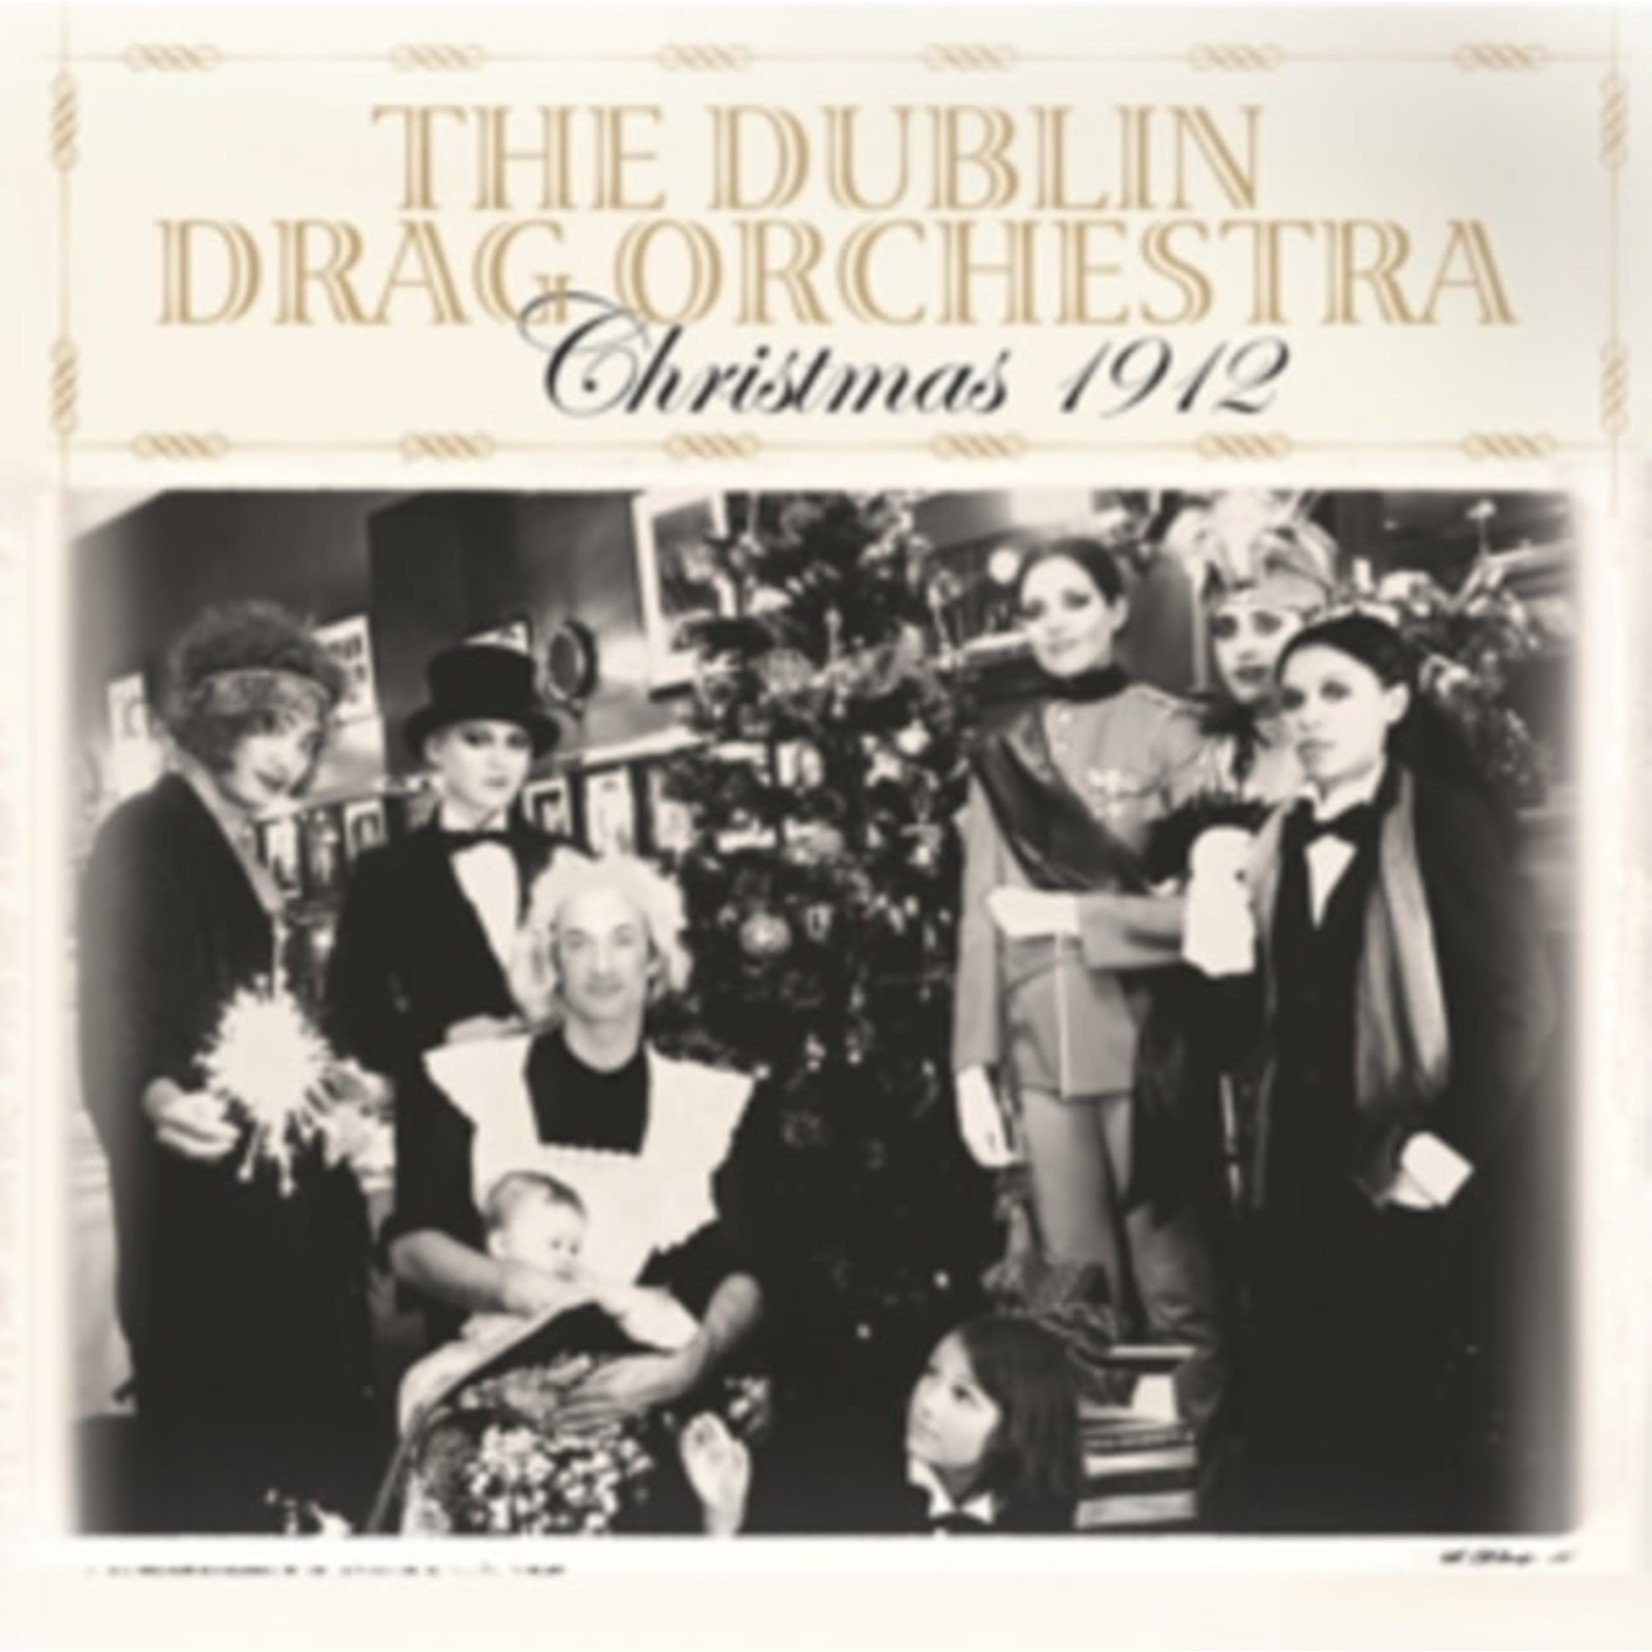 Dublin Drag Orchestra - Christmas 1912: Litanie de la Vierge (7")